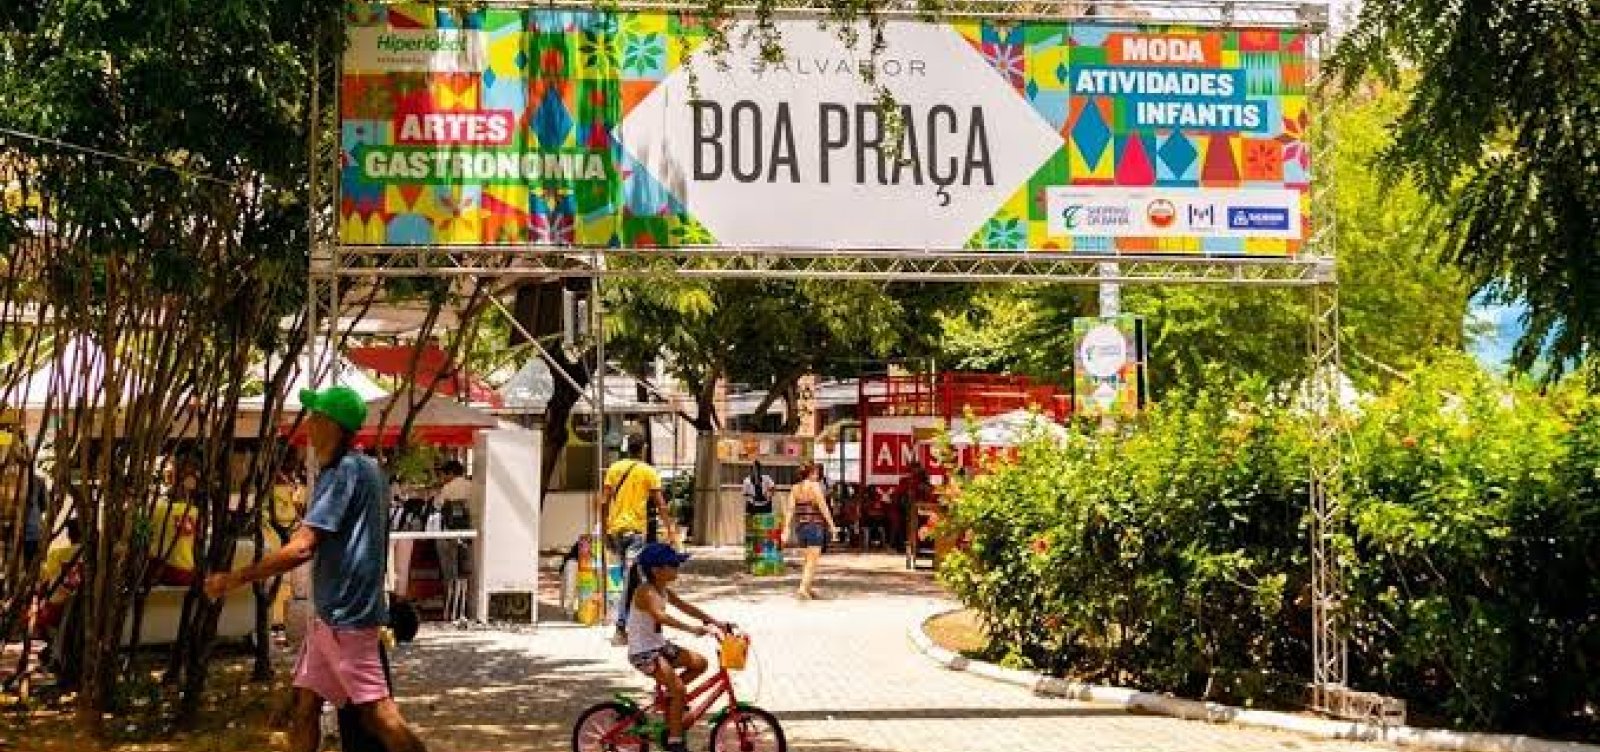 Salvador Boa Praça: evento ressaca de carnaval promove literatura e inclusão na edição deste ano 